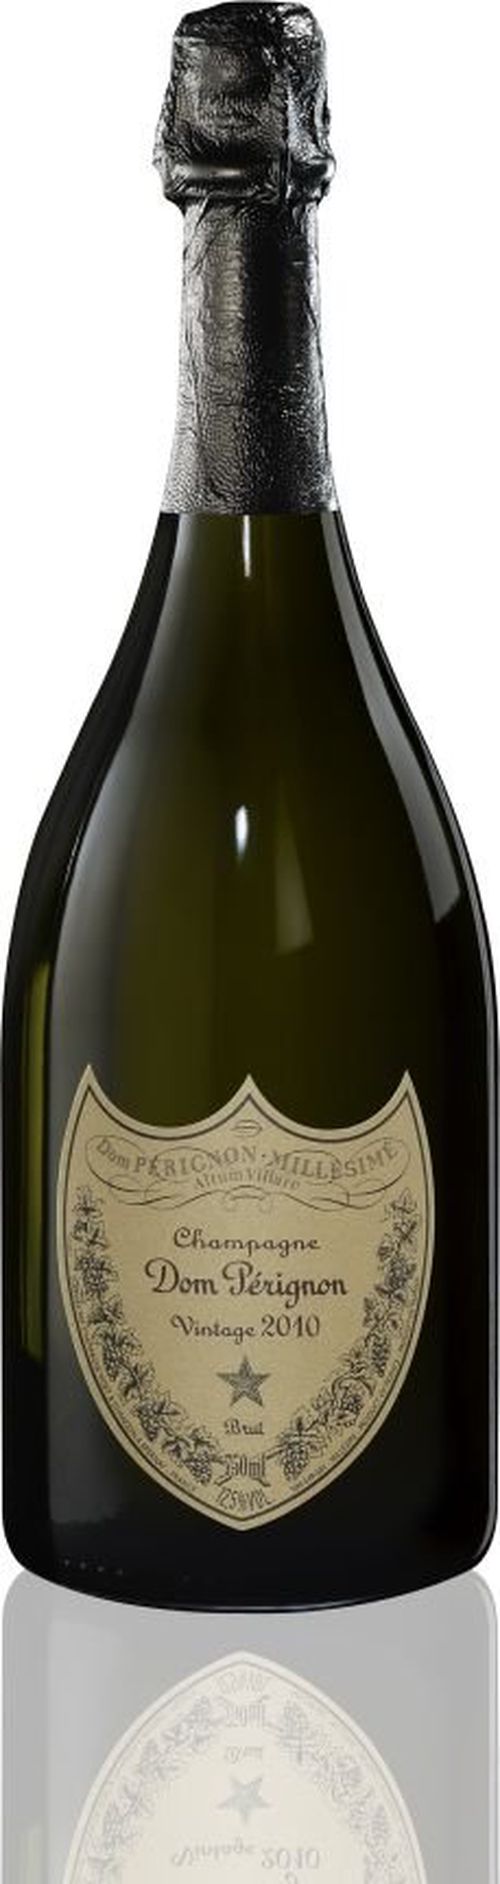 Dom Pérignon Blanc Vintage 2010 0,75l 12,5%